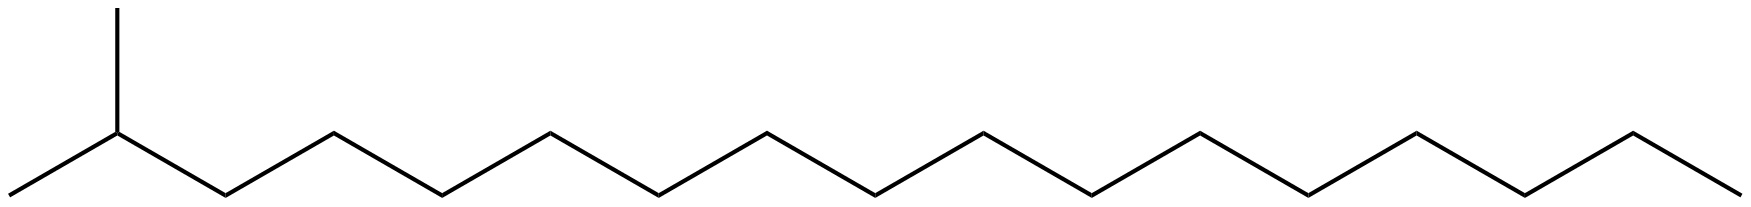 Image of 2-methylheptadecane